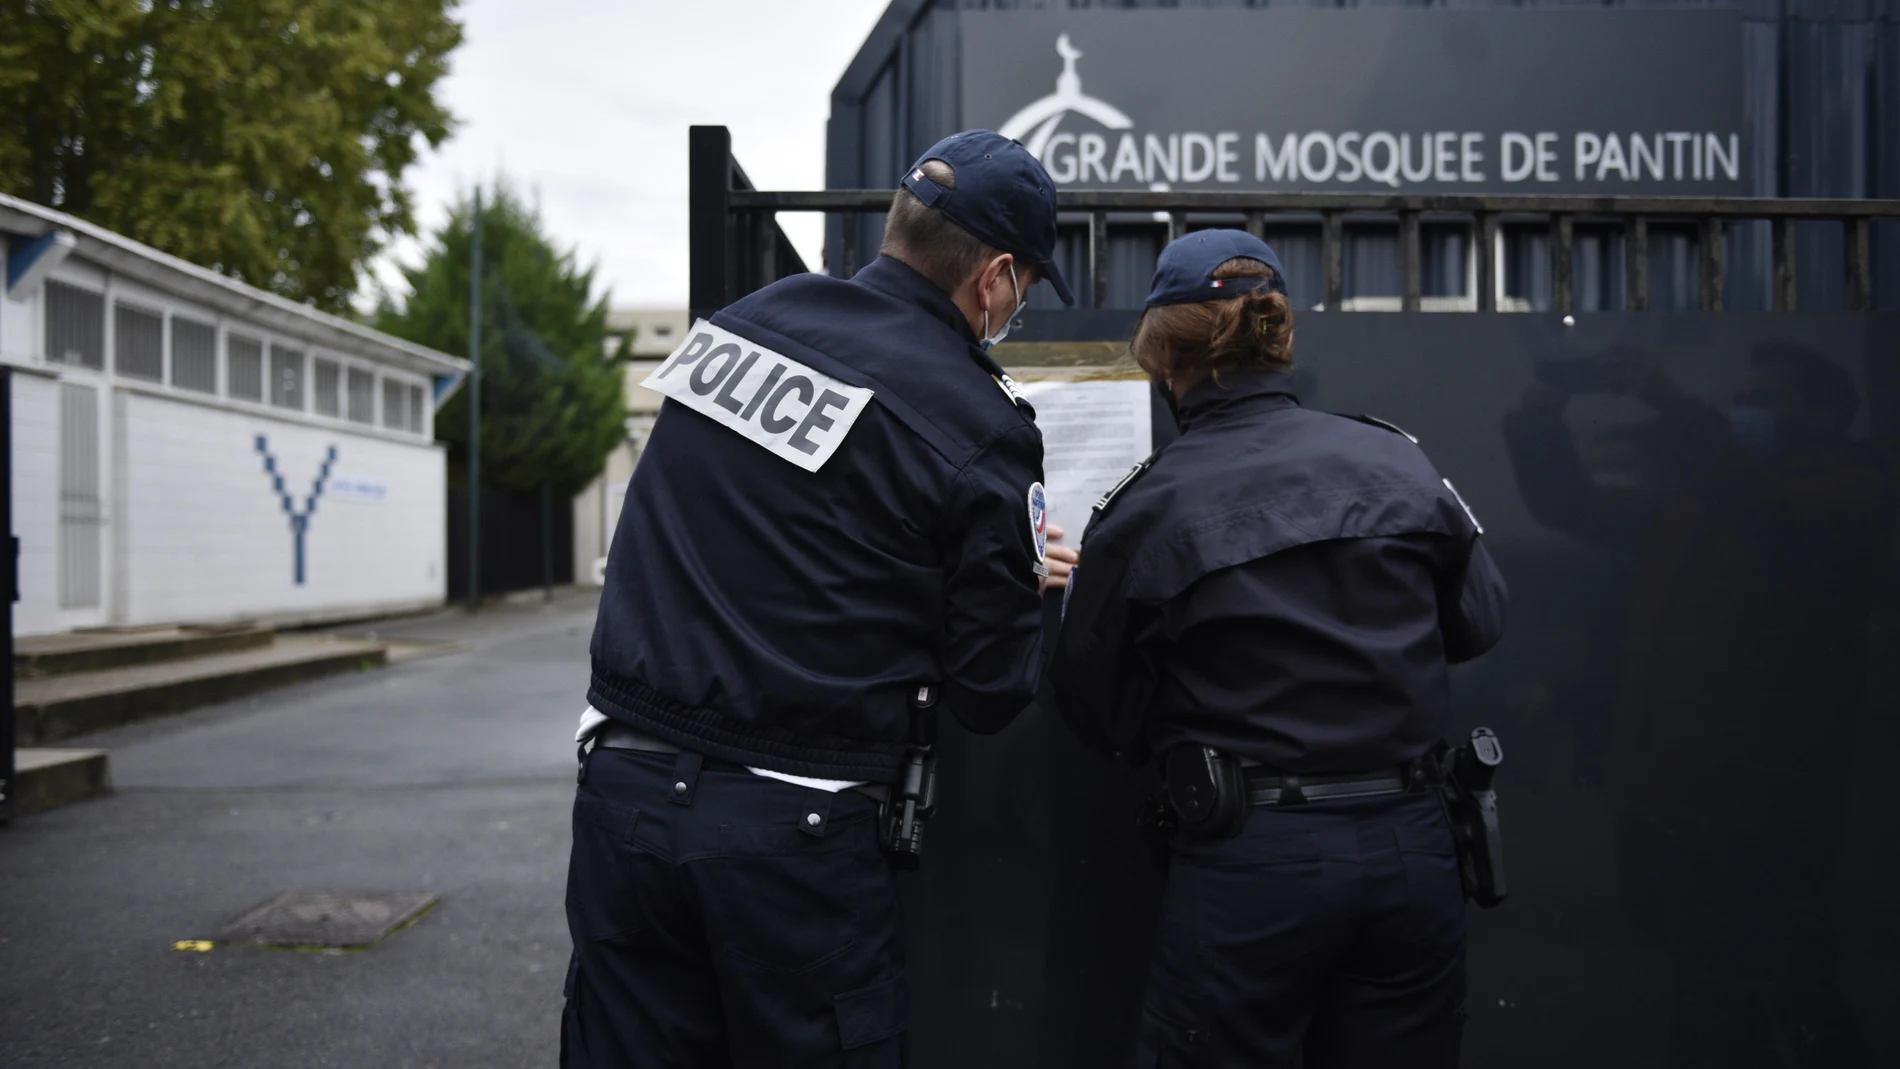 La Policía coloca el decreto en el que se ordena el cierre de la gran mezquita de Pantin en París